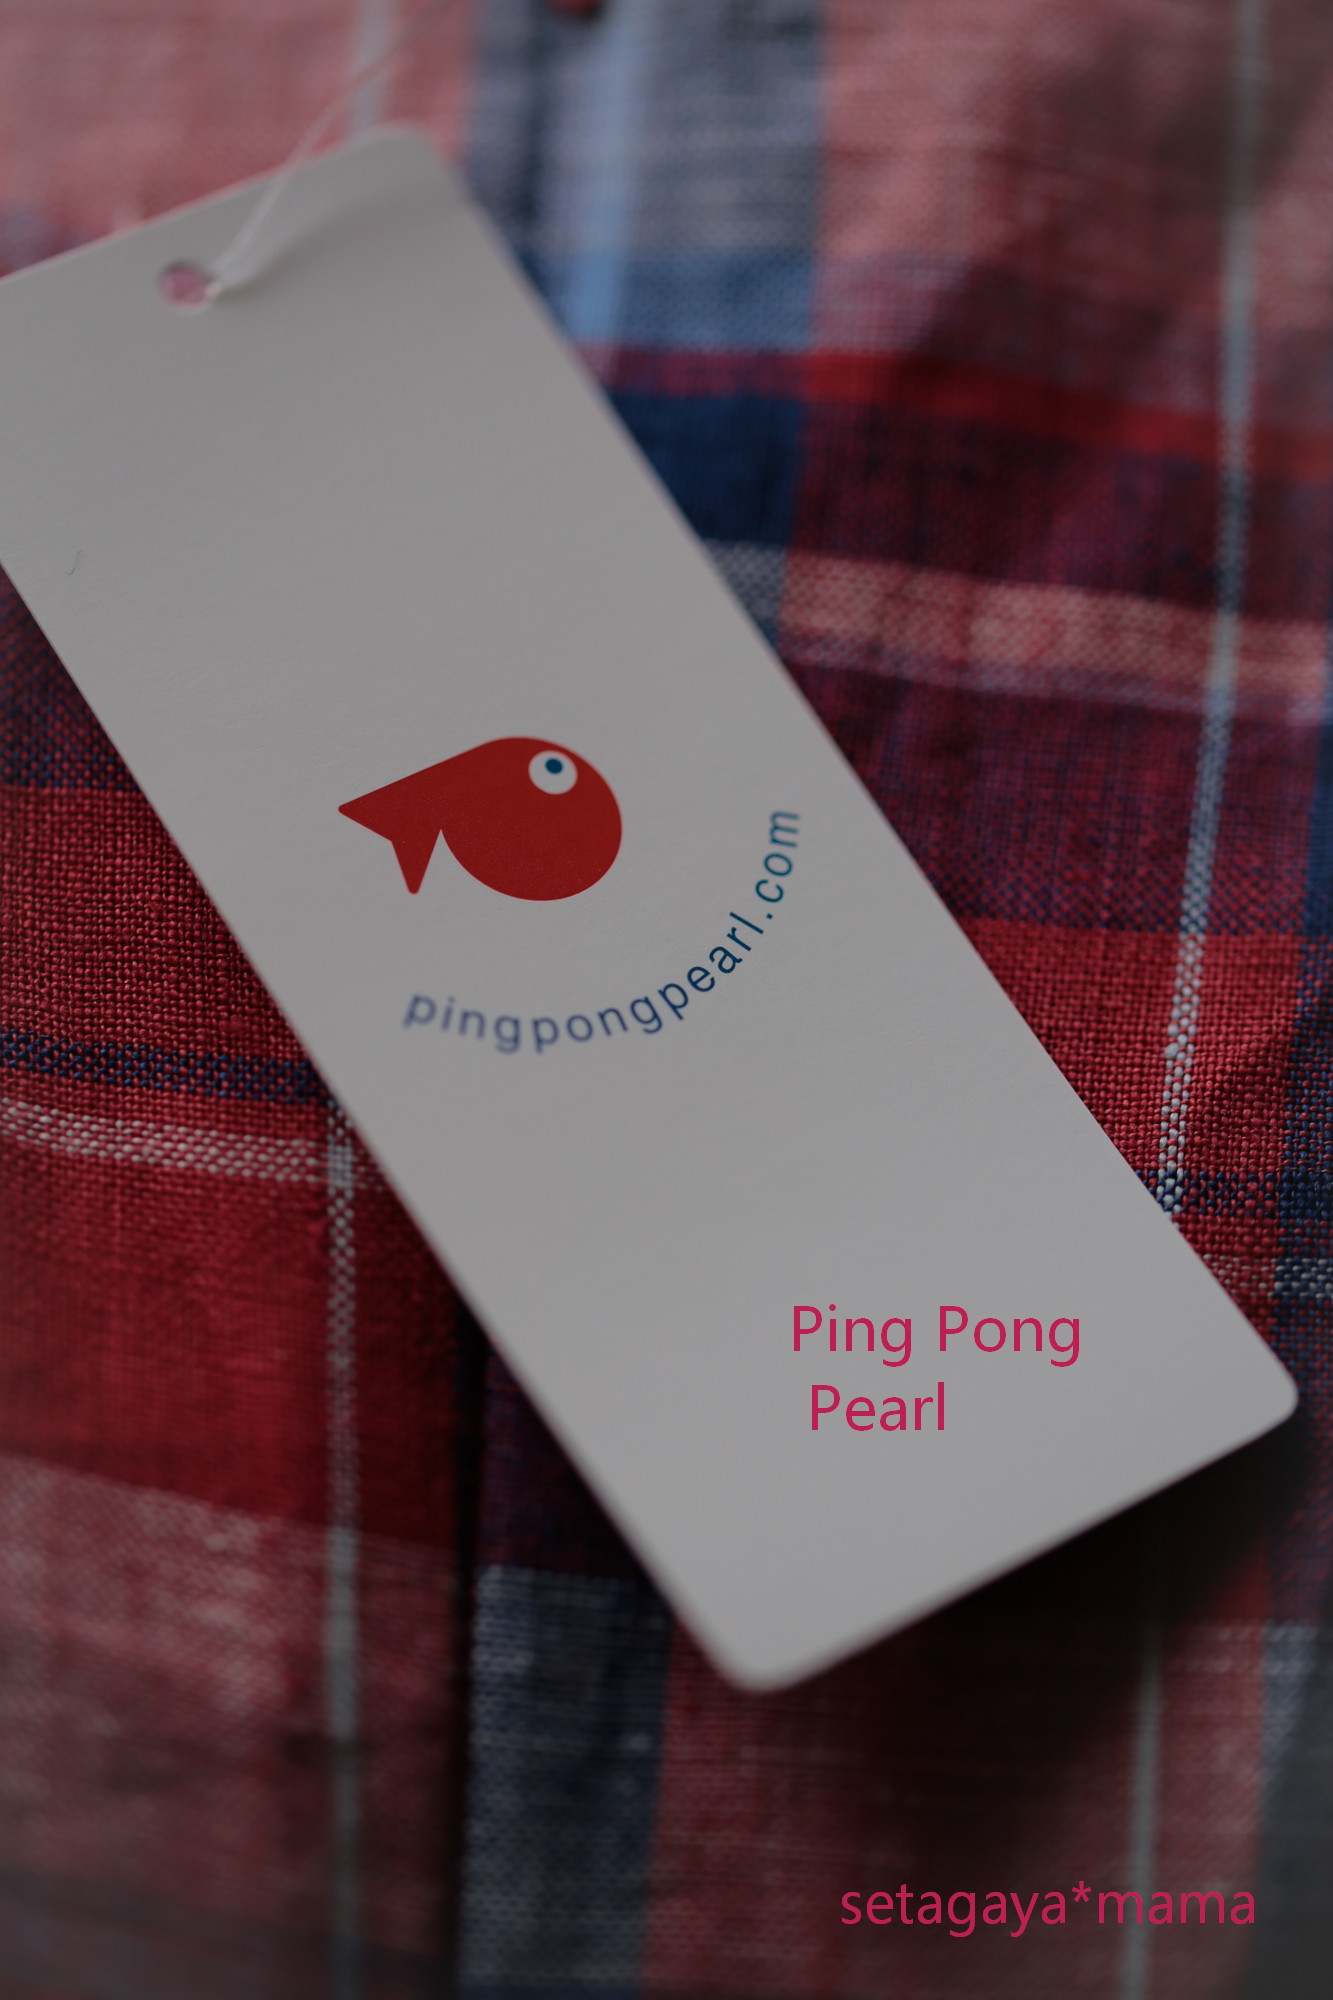 Ping pong pearl_MG_2433